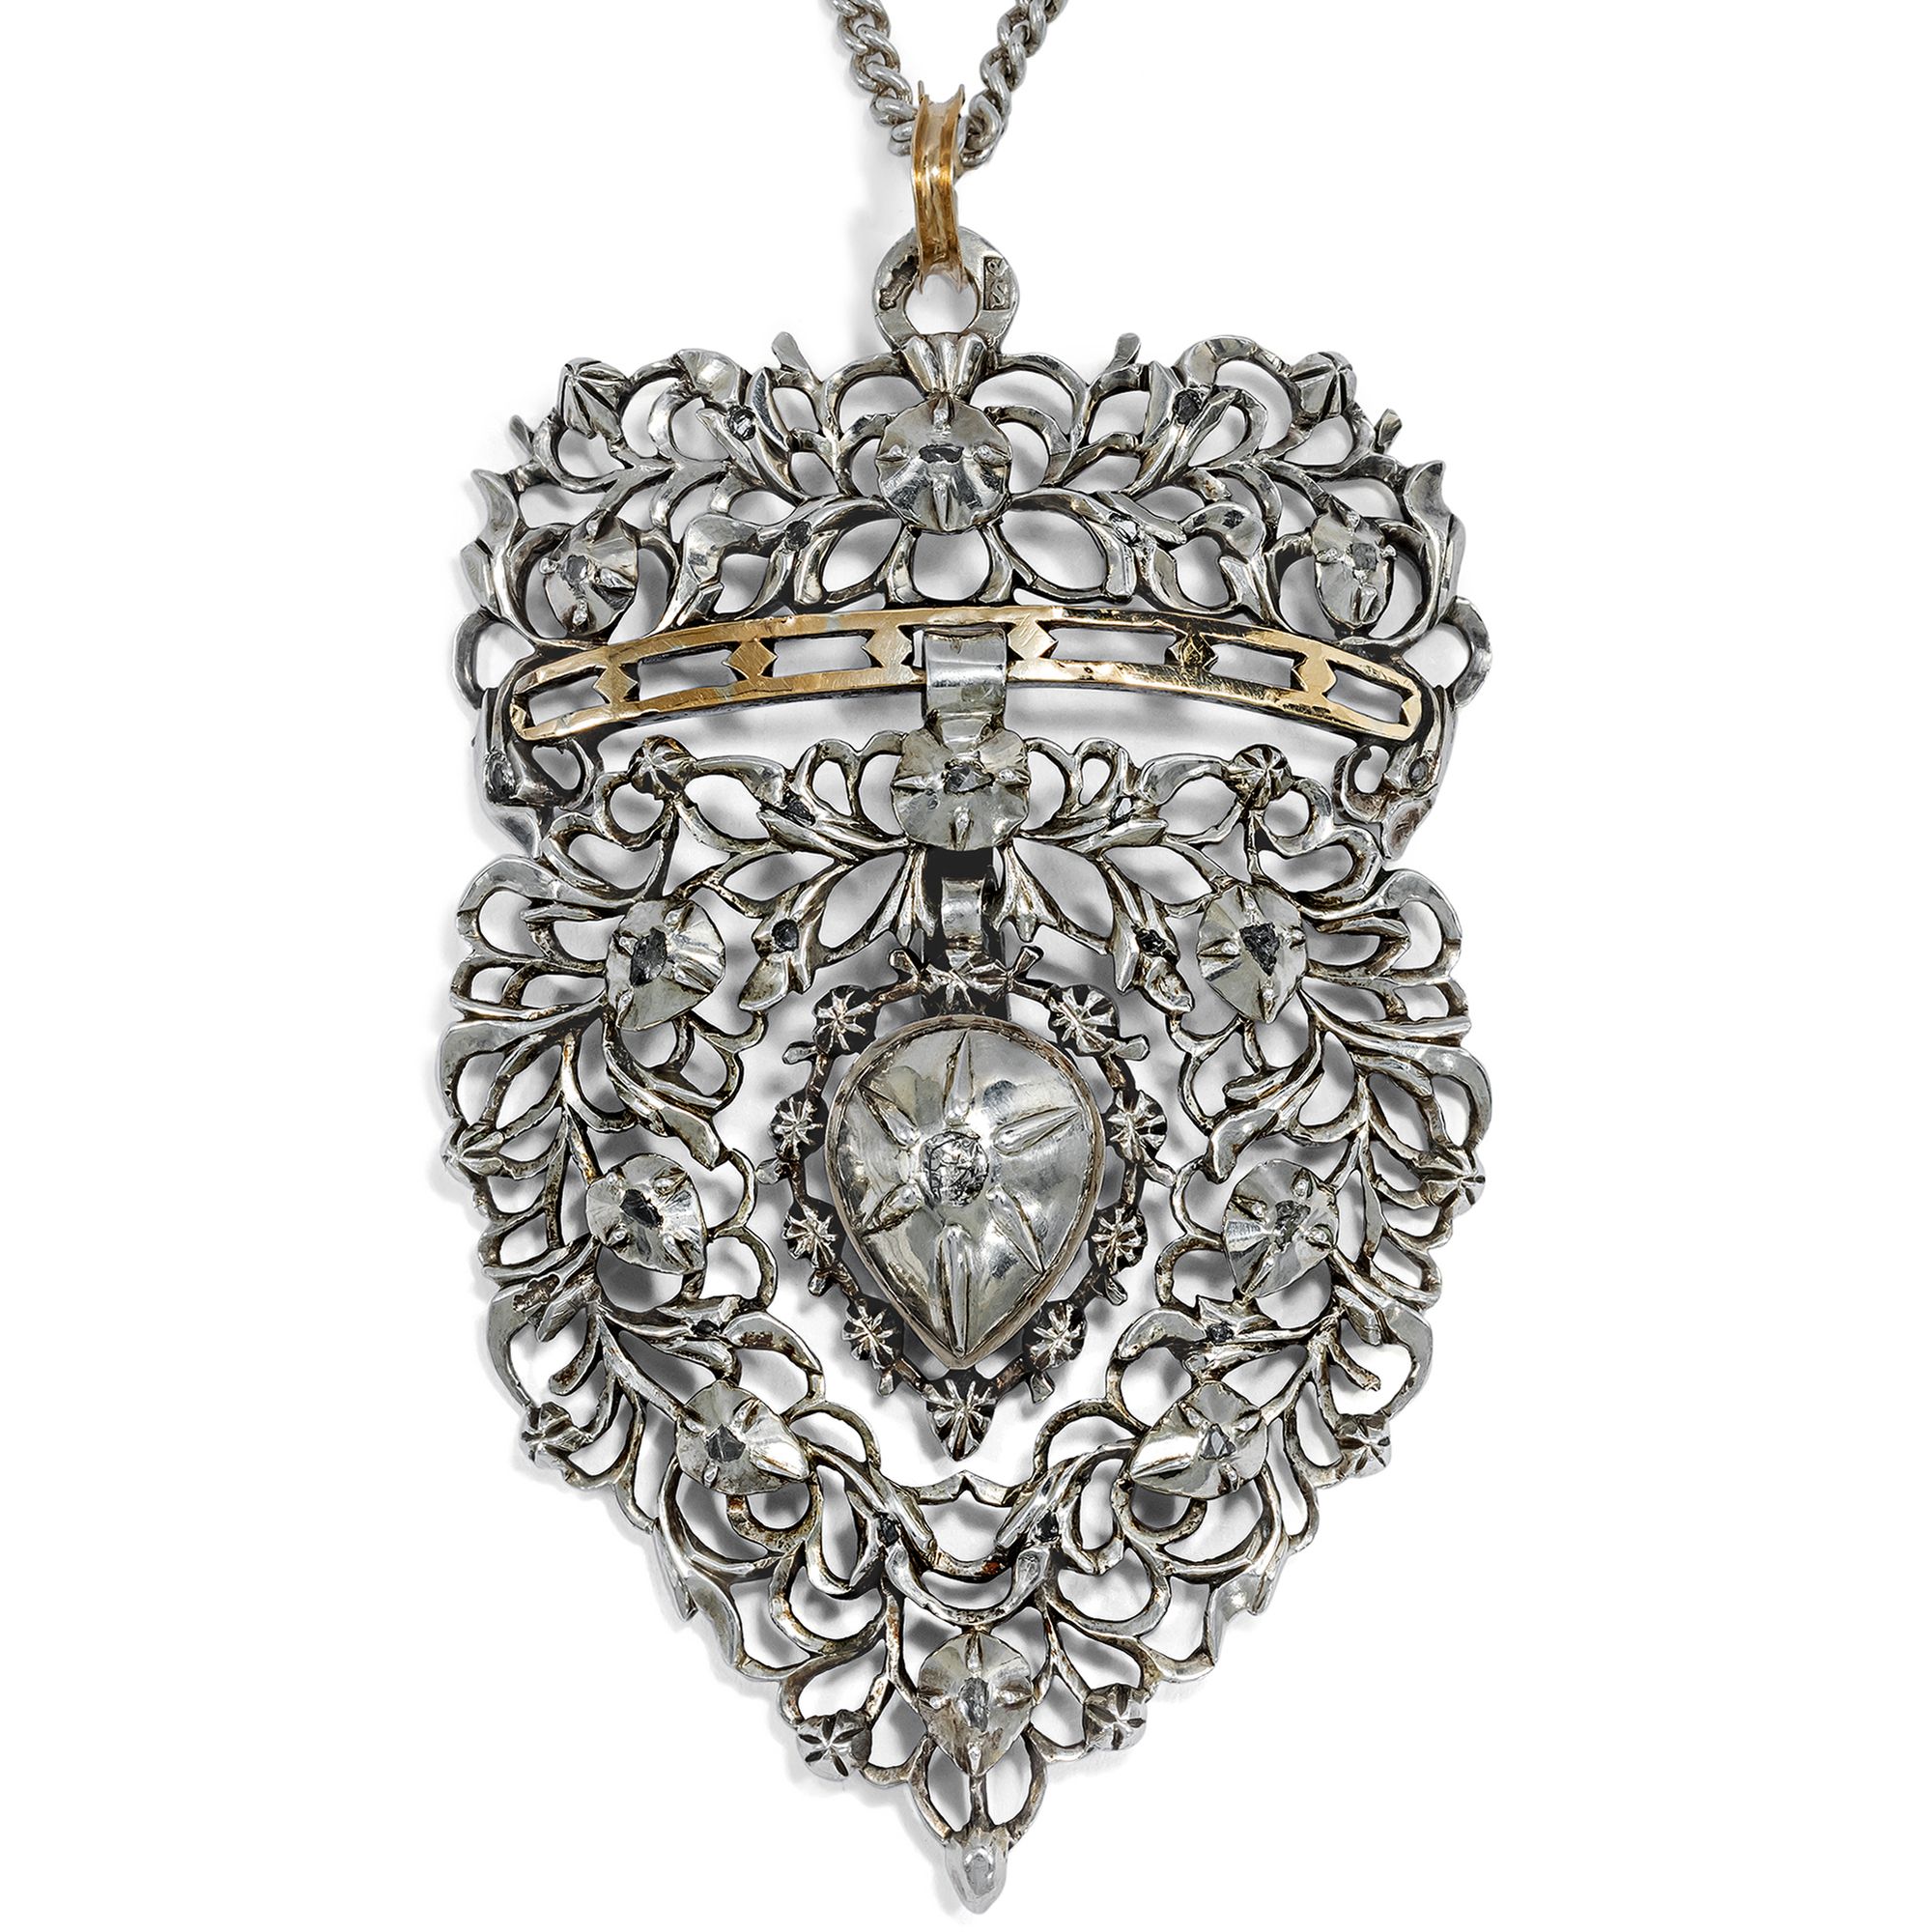 Großer Anhänger mit Diamanten in Silber aus Belgien, um 1850